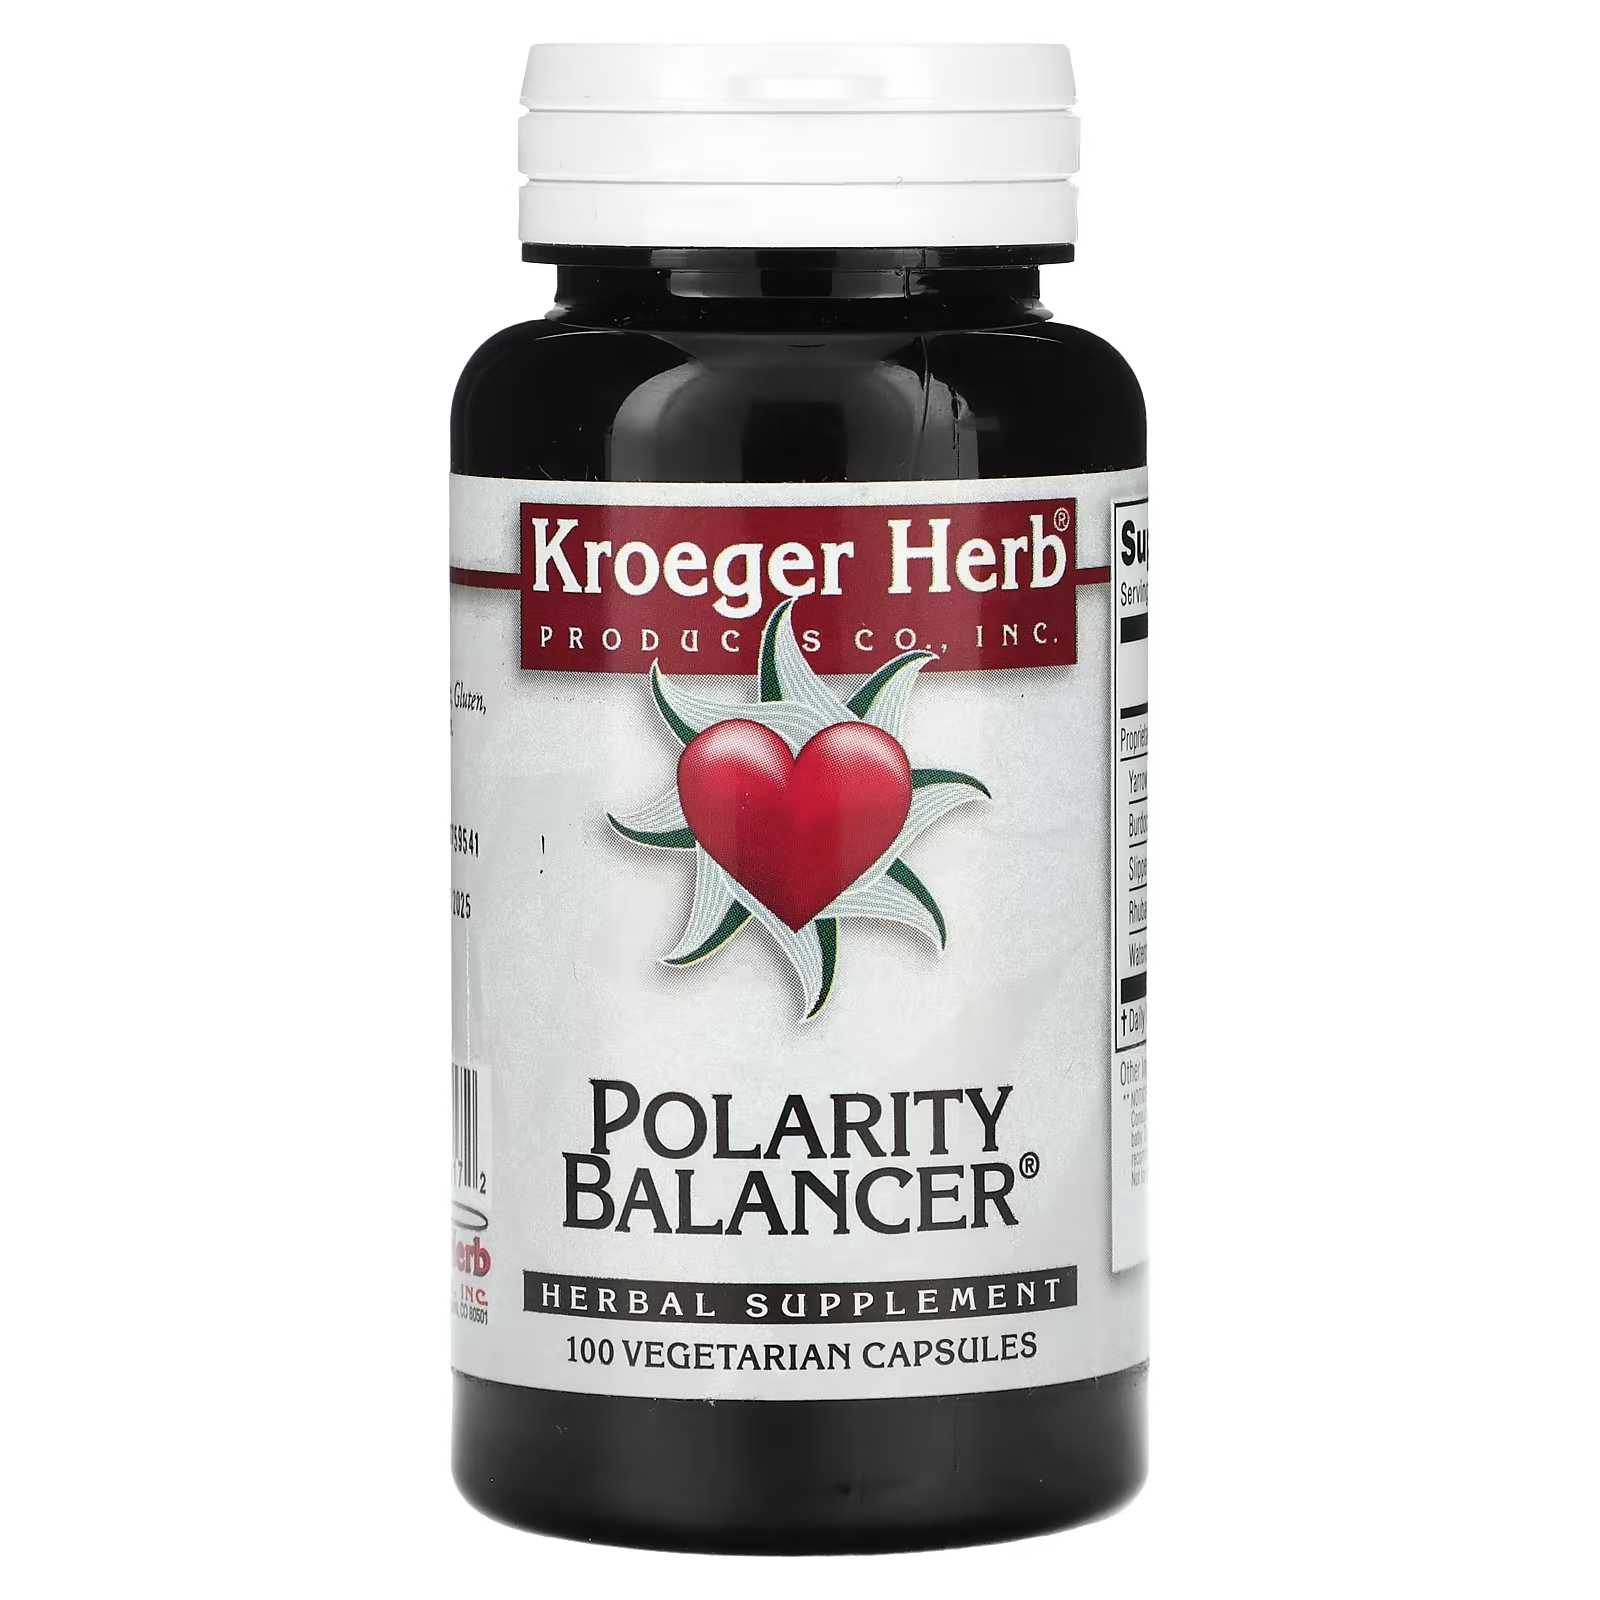 Растительная добавка Kroeger Herb Co балансировщик полярности, 100 капсул